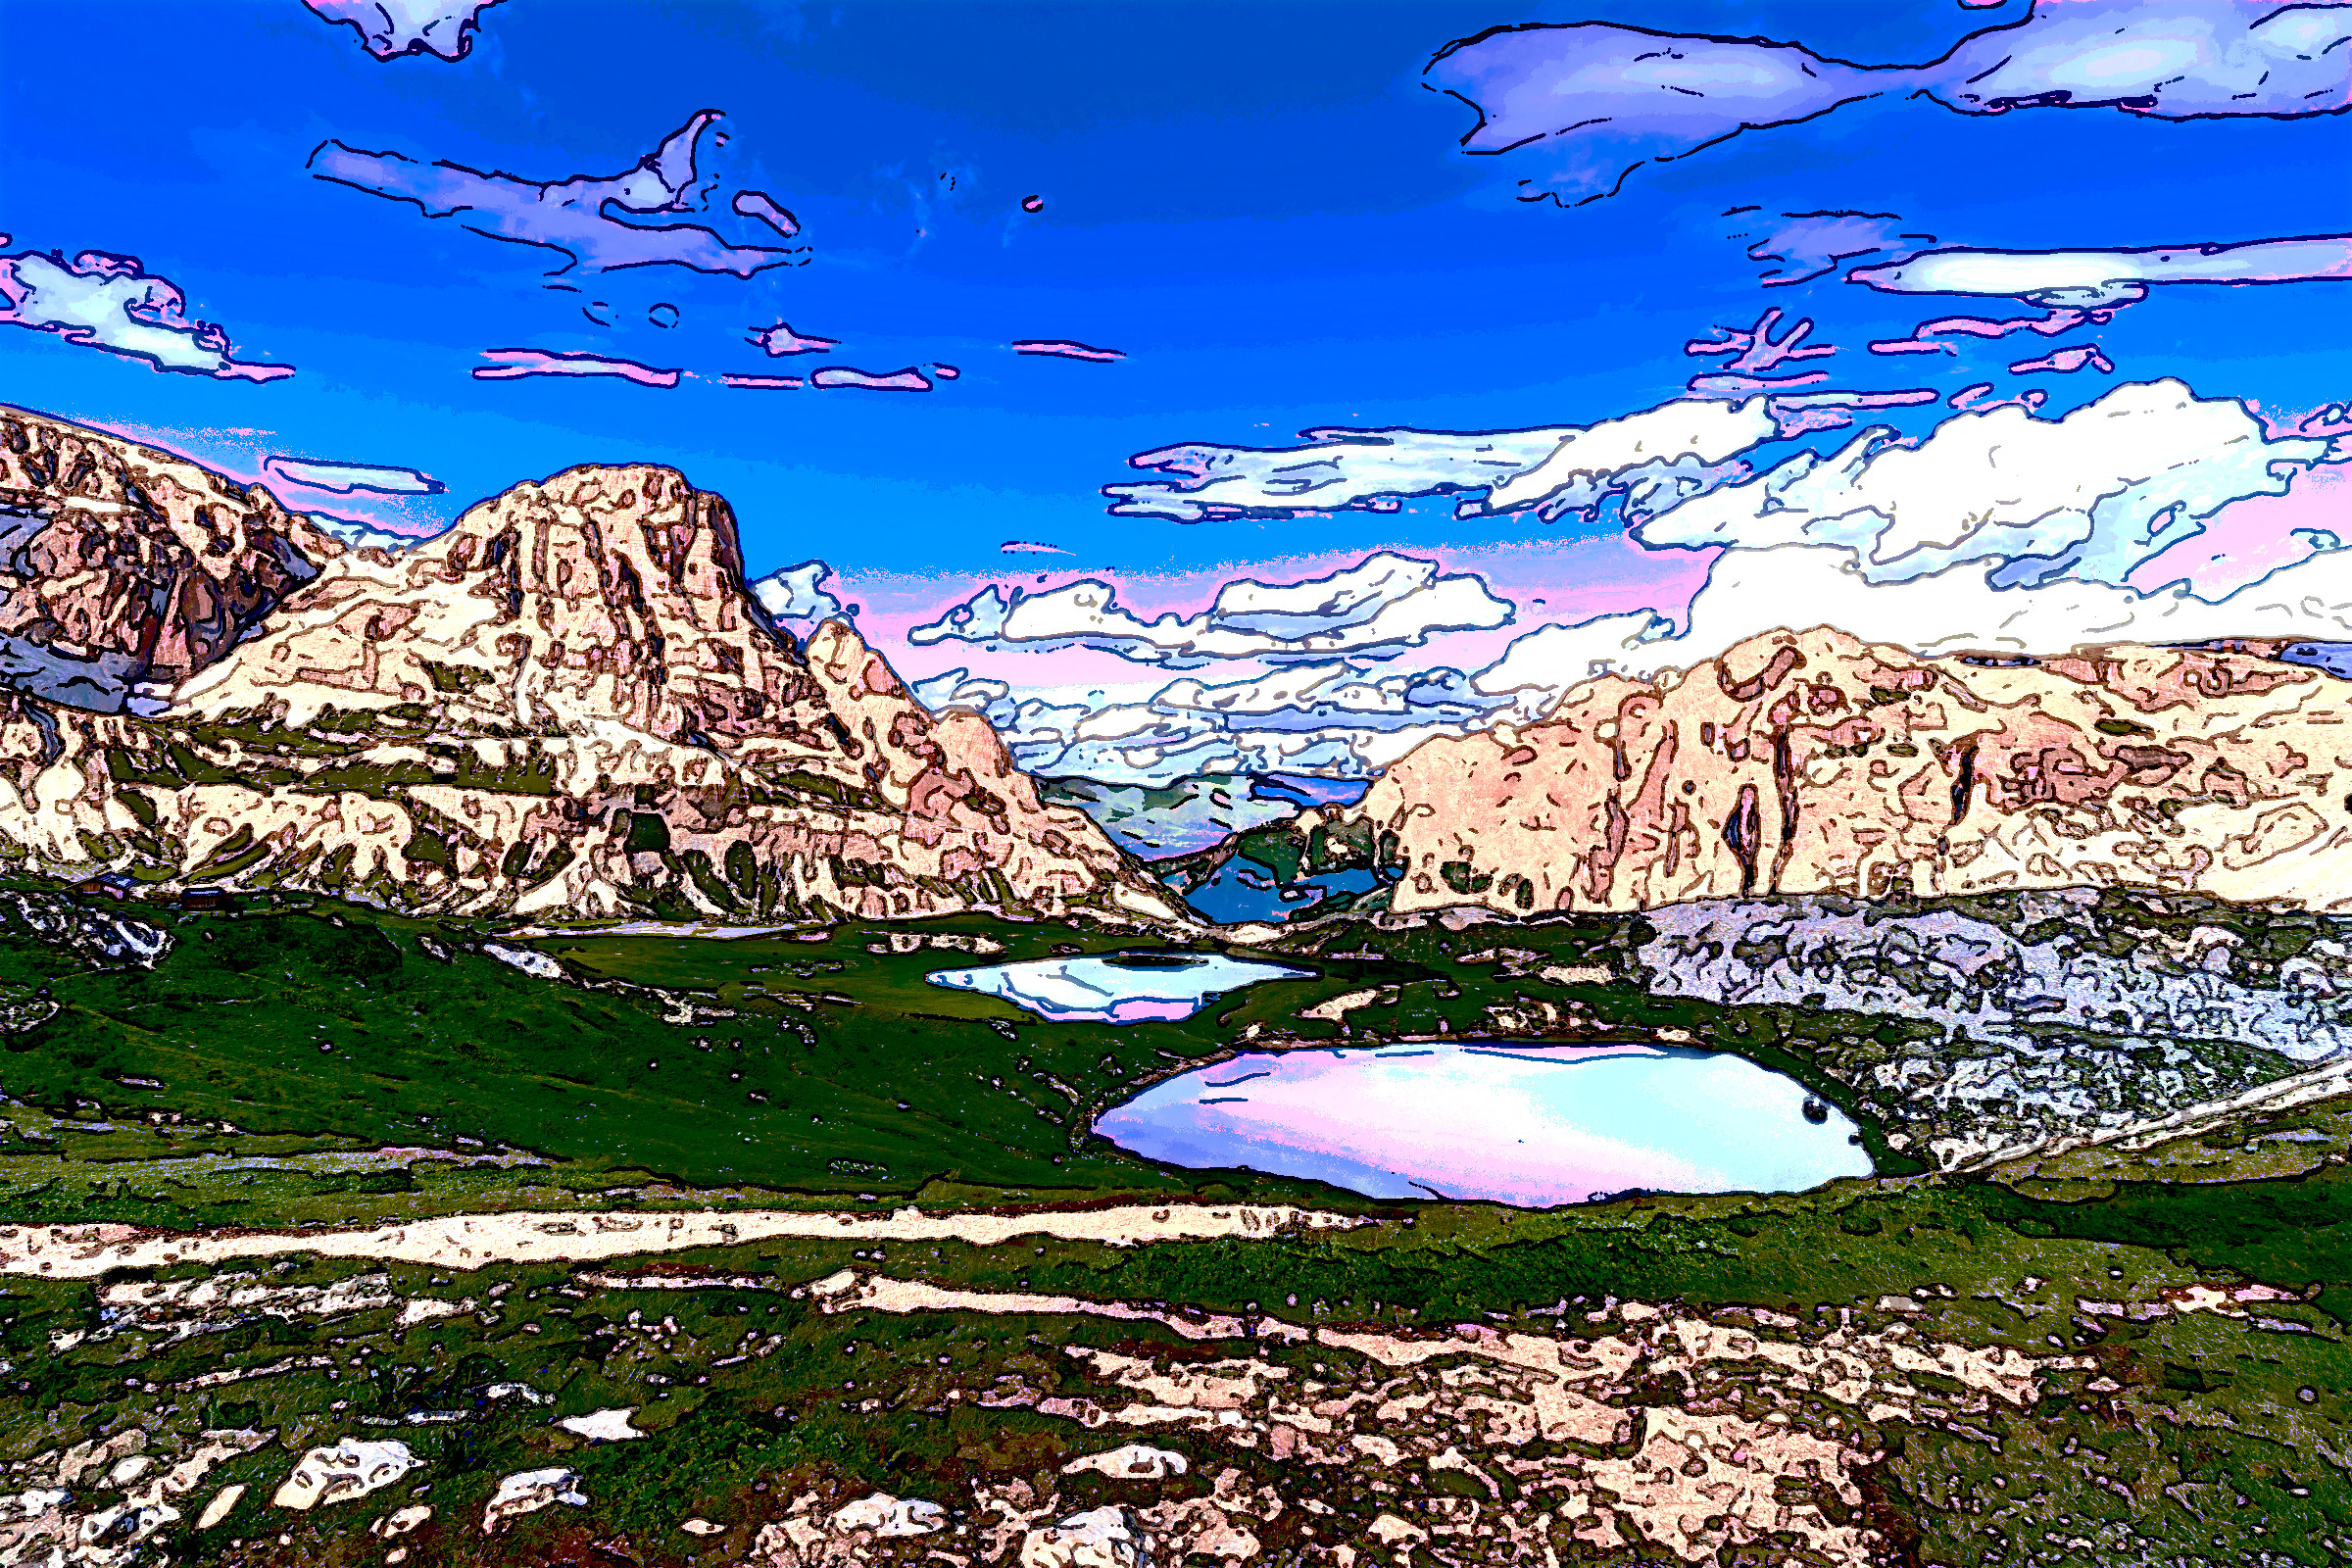 2021-04-16 09-11-35 pexels-chavdar-lungov-3996438 with effect V (Cartoon), colours.jpeg